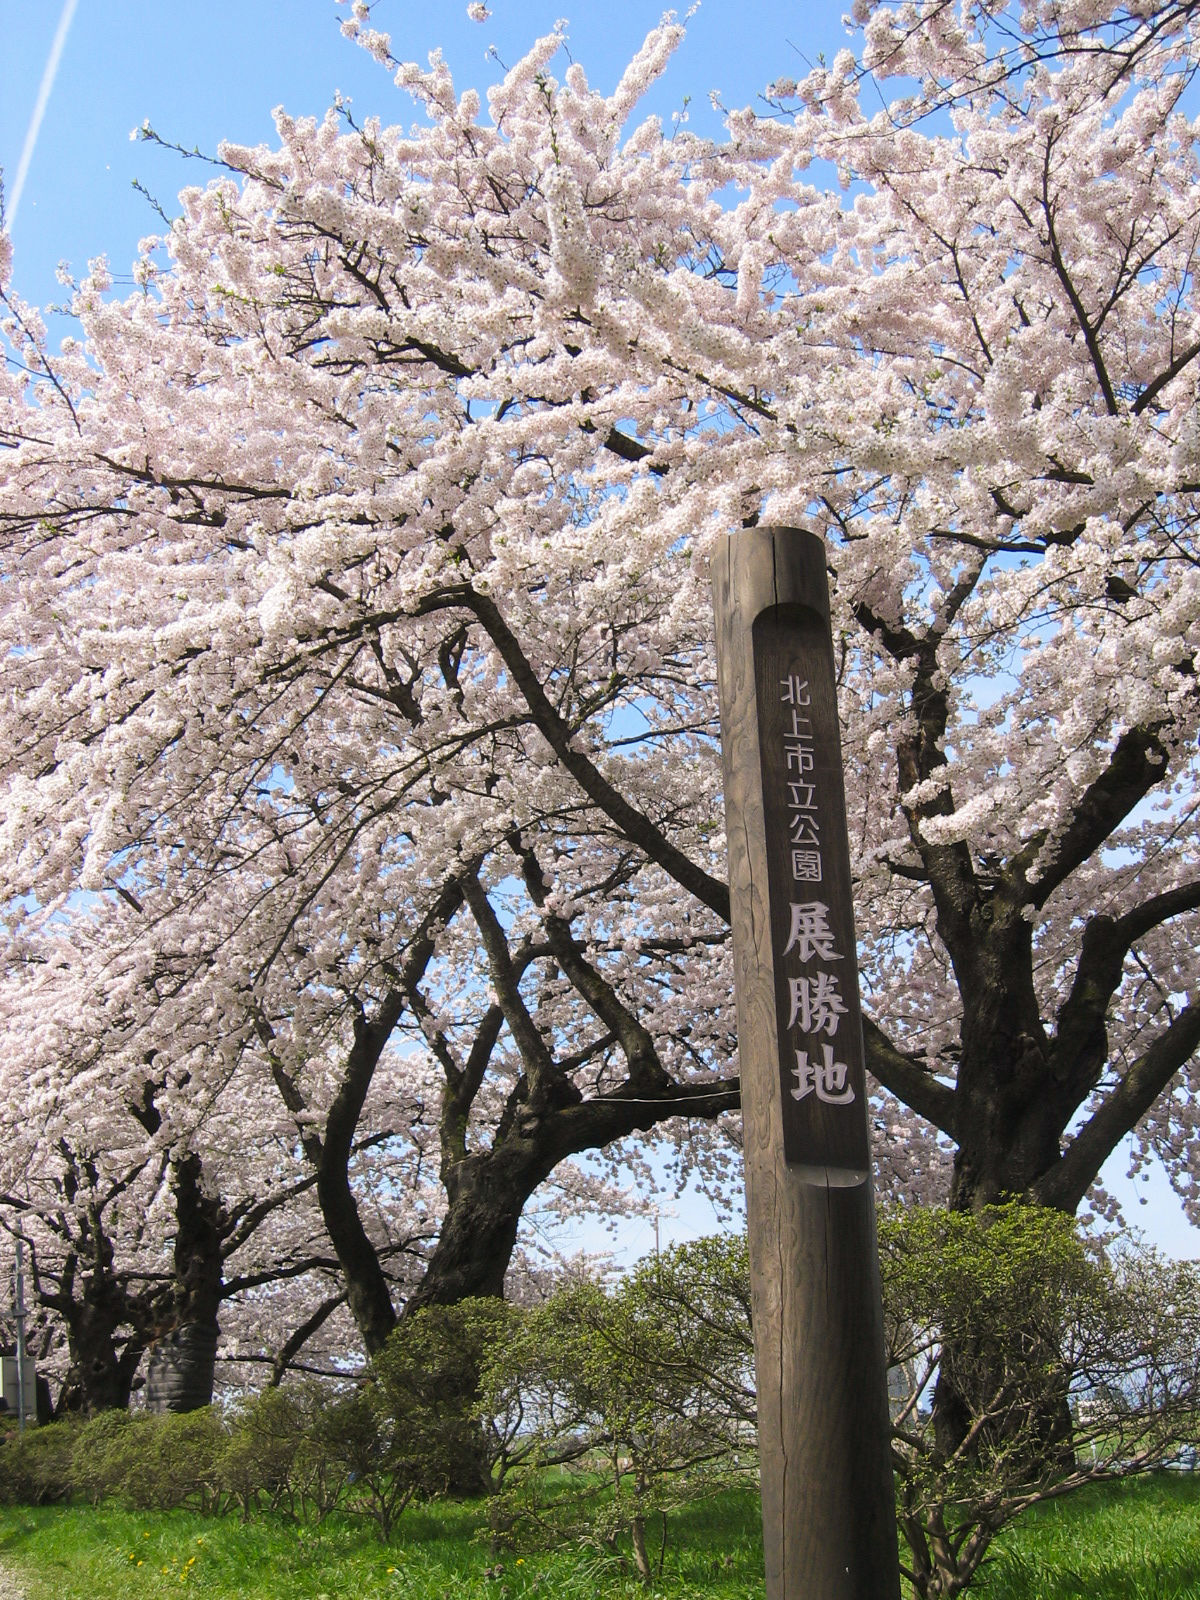 树龄超过90年的巨型樱树 ※借用图片(北上观光行业协会)